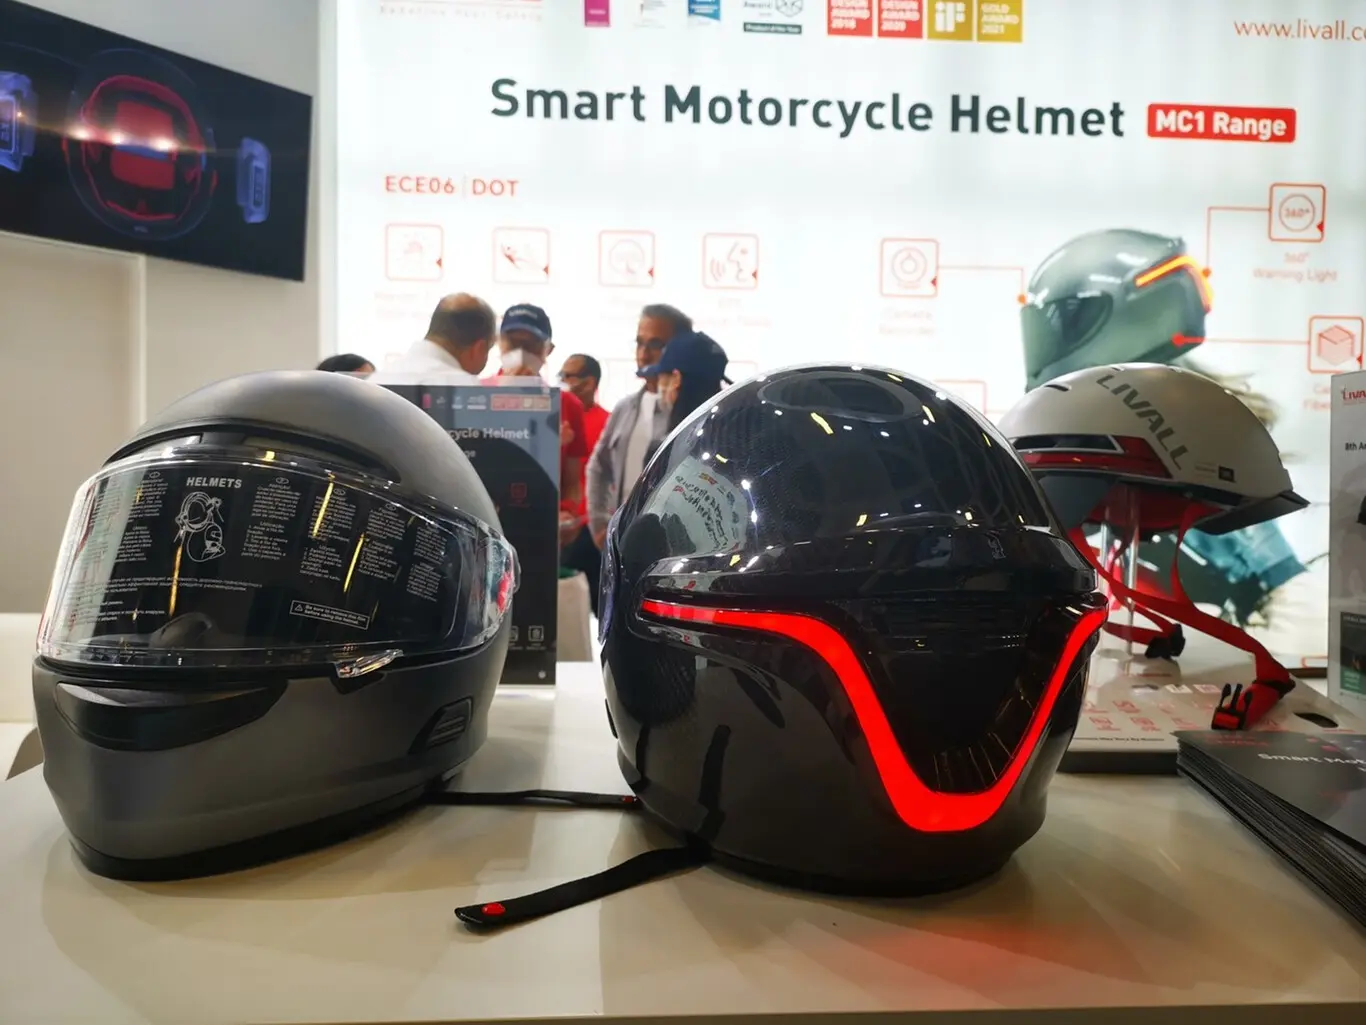 activos y pasivos de una empresa de casco inteligente - Cuáles son los elementos de seguridad de una moto